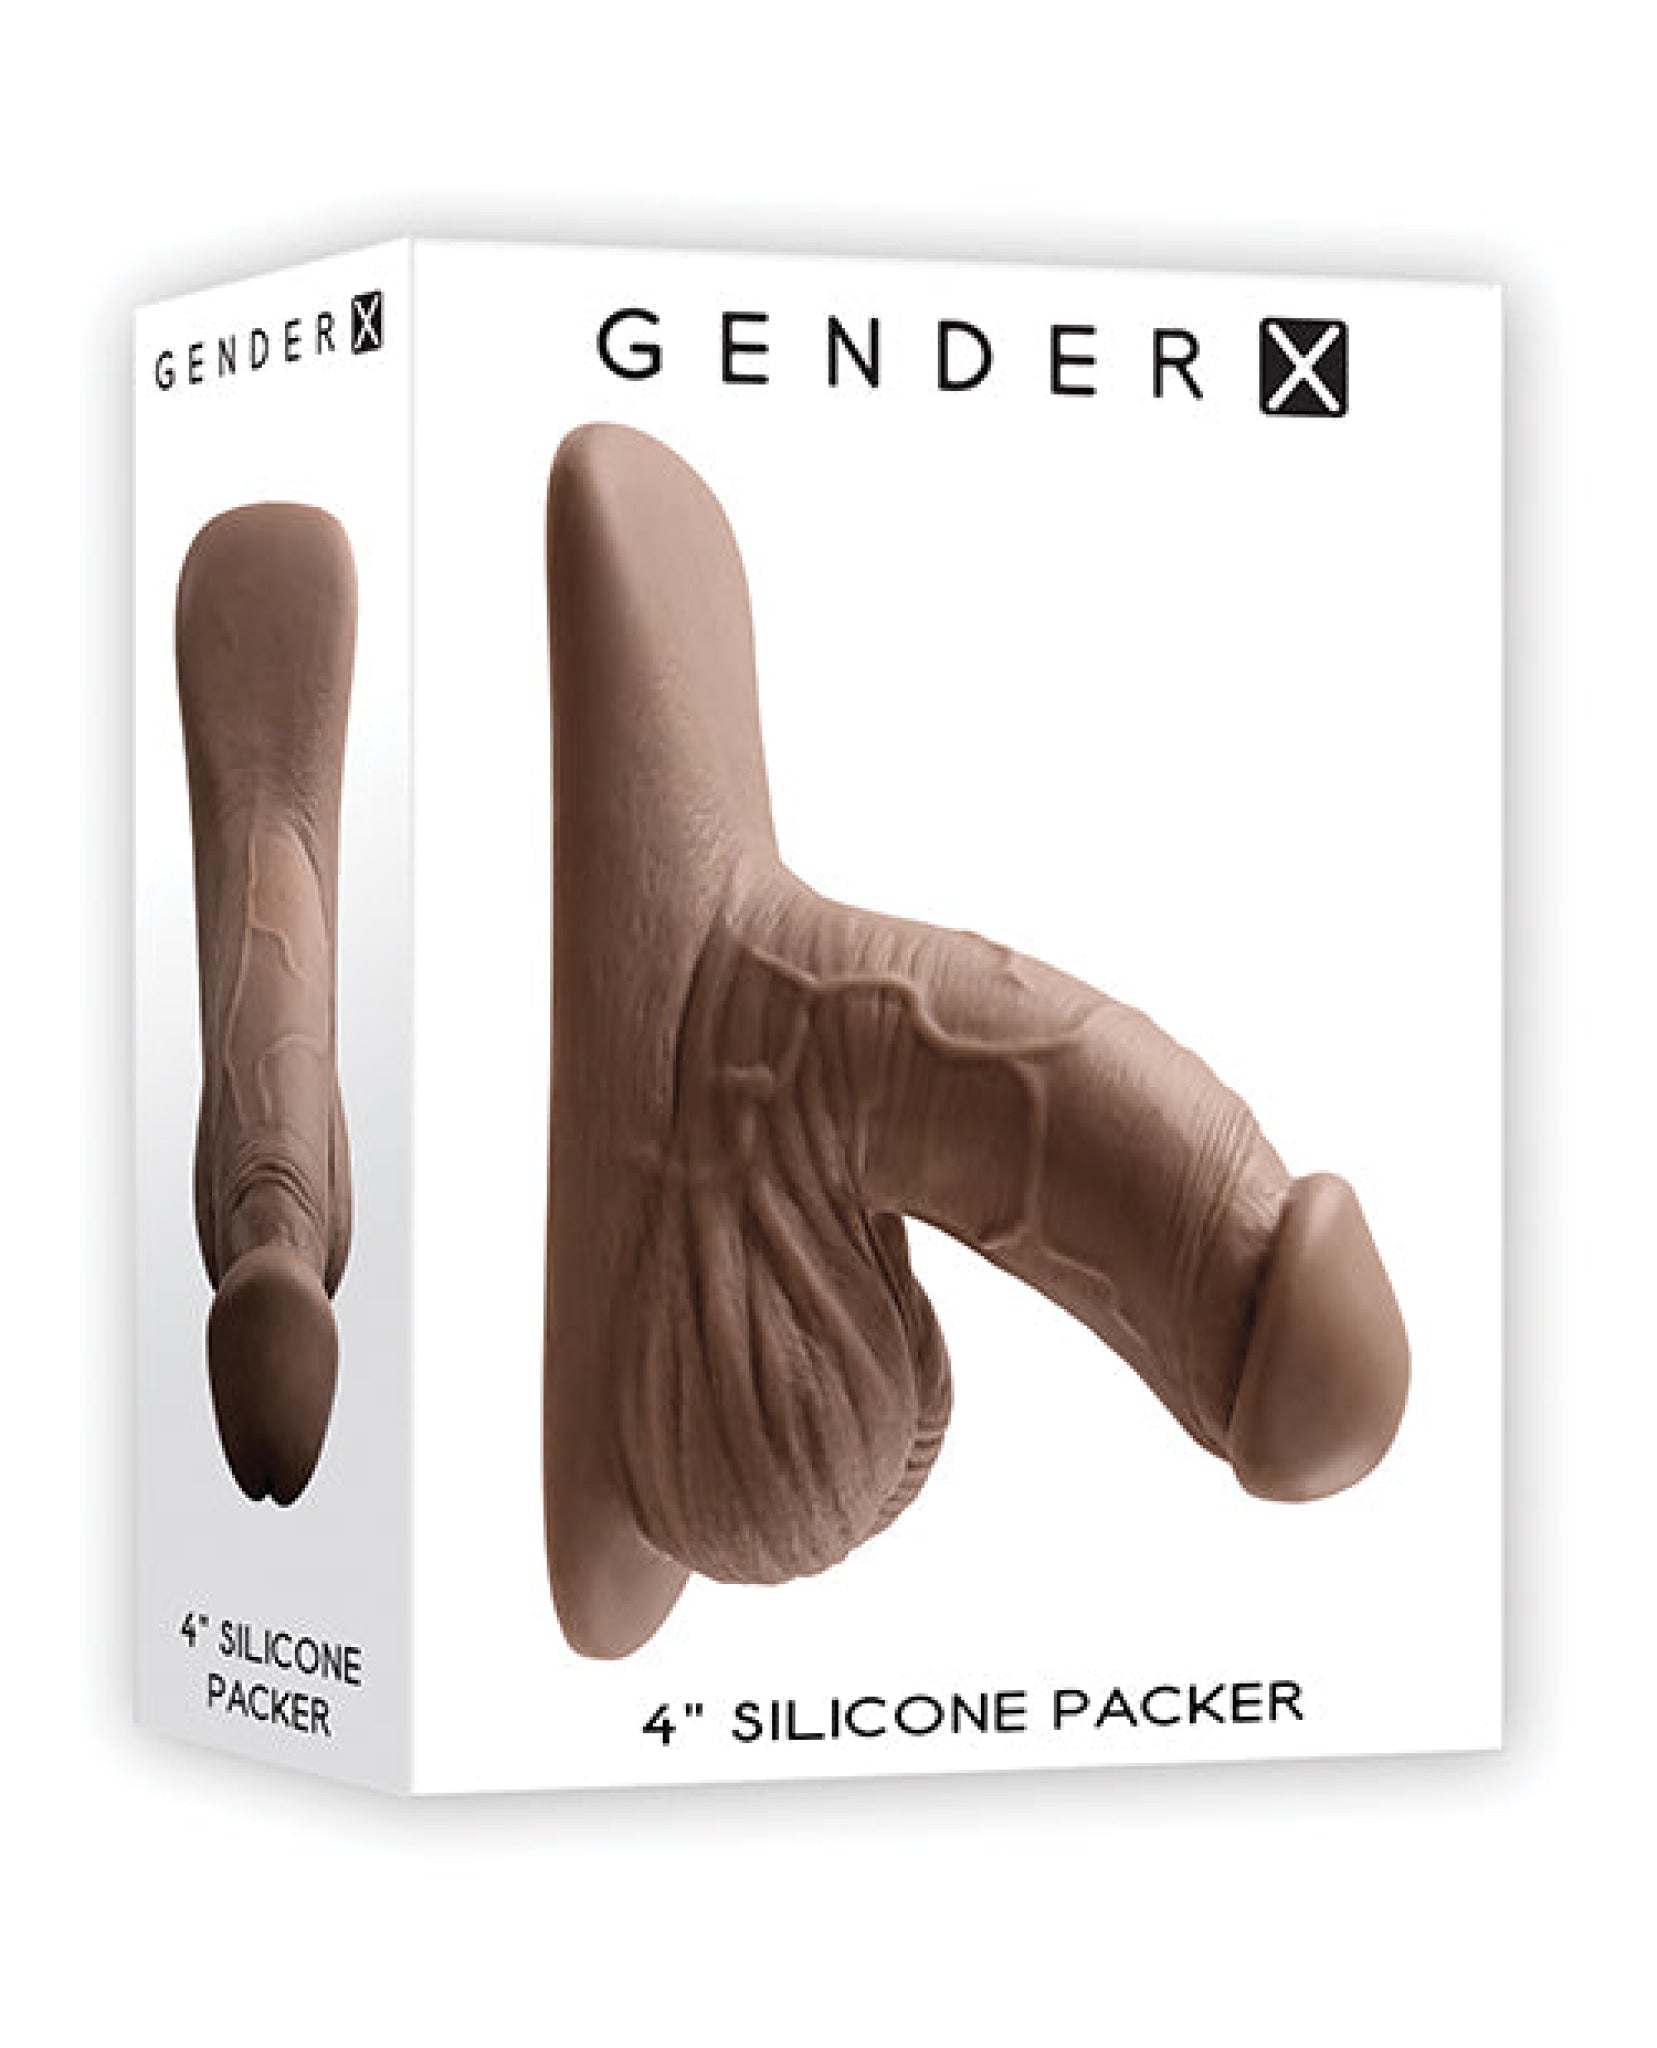 Gender X 4" Silicone Packer - Dark Gender X